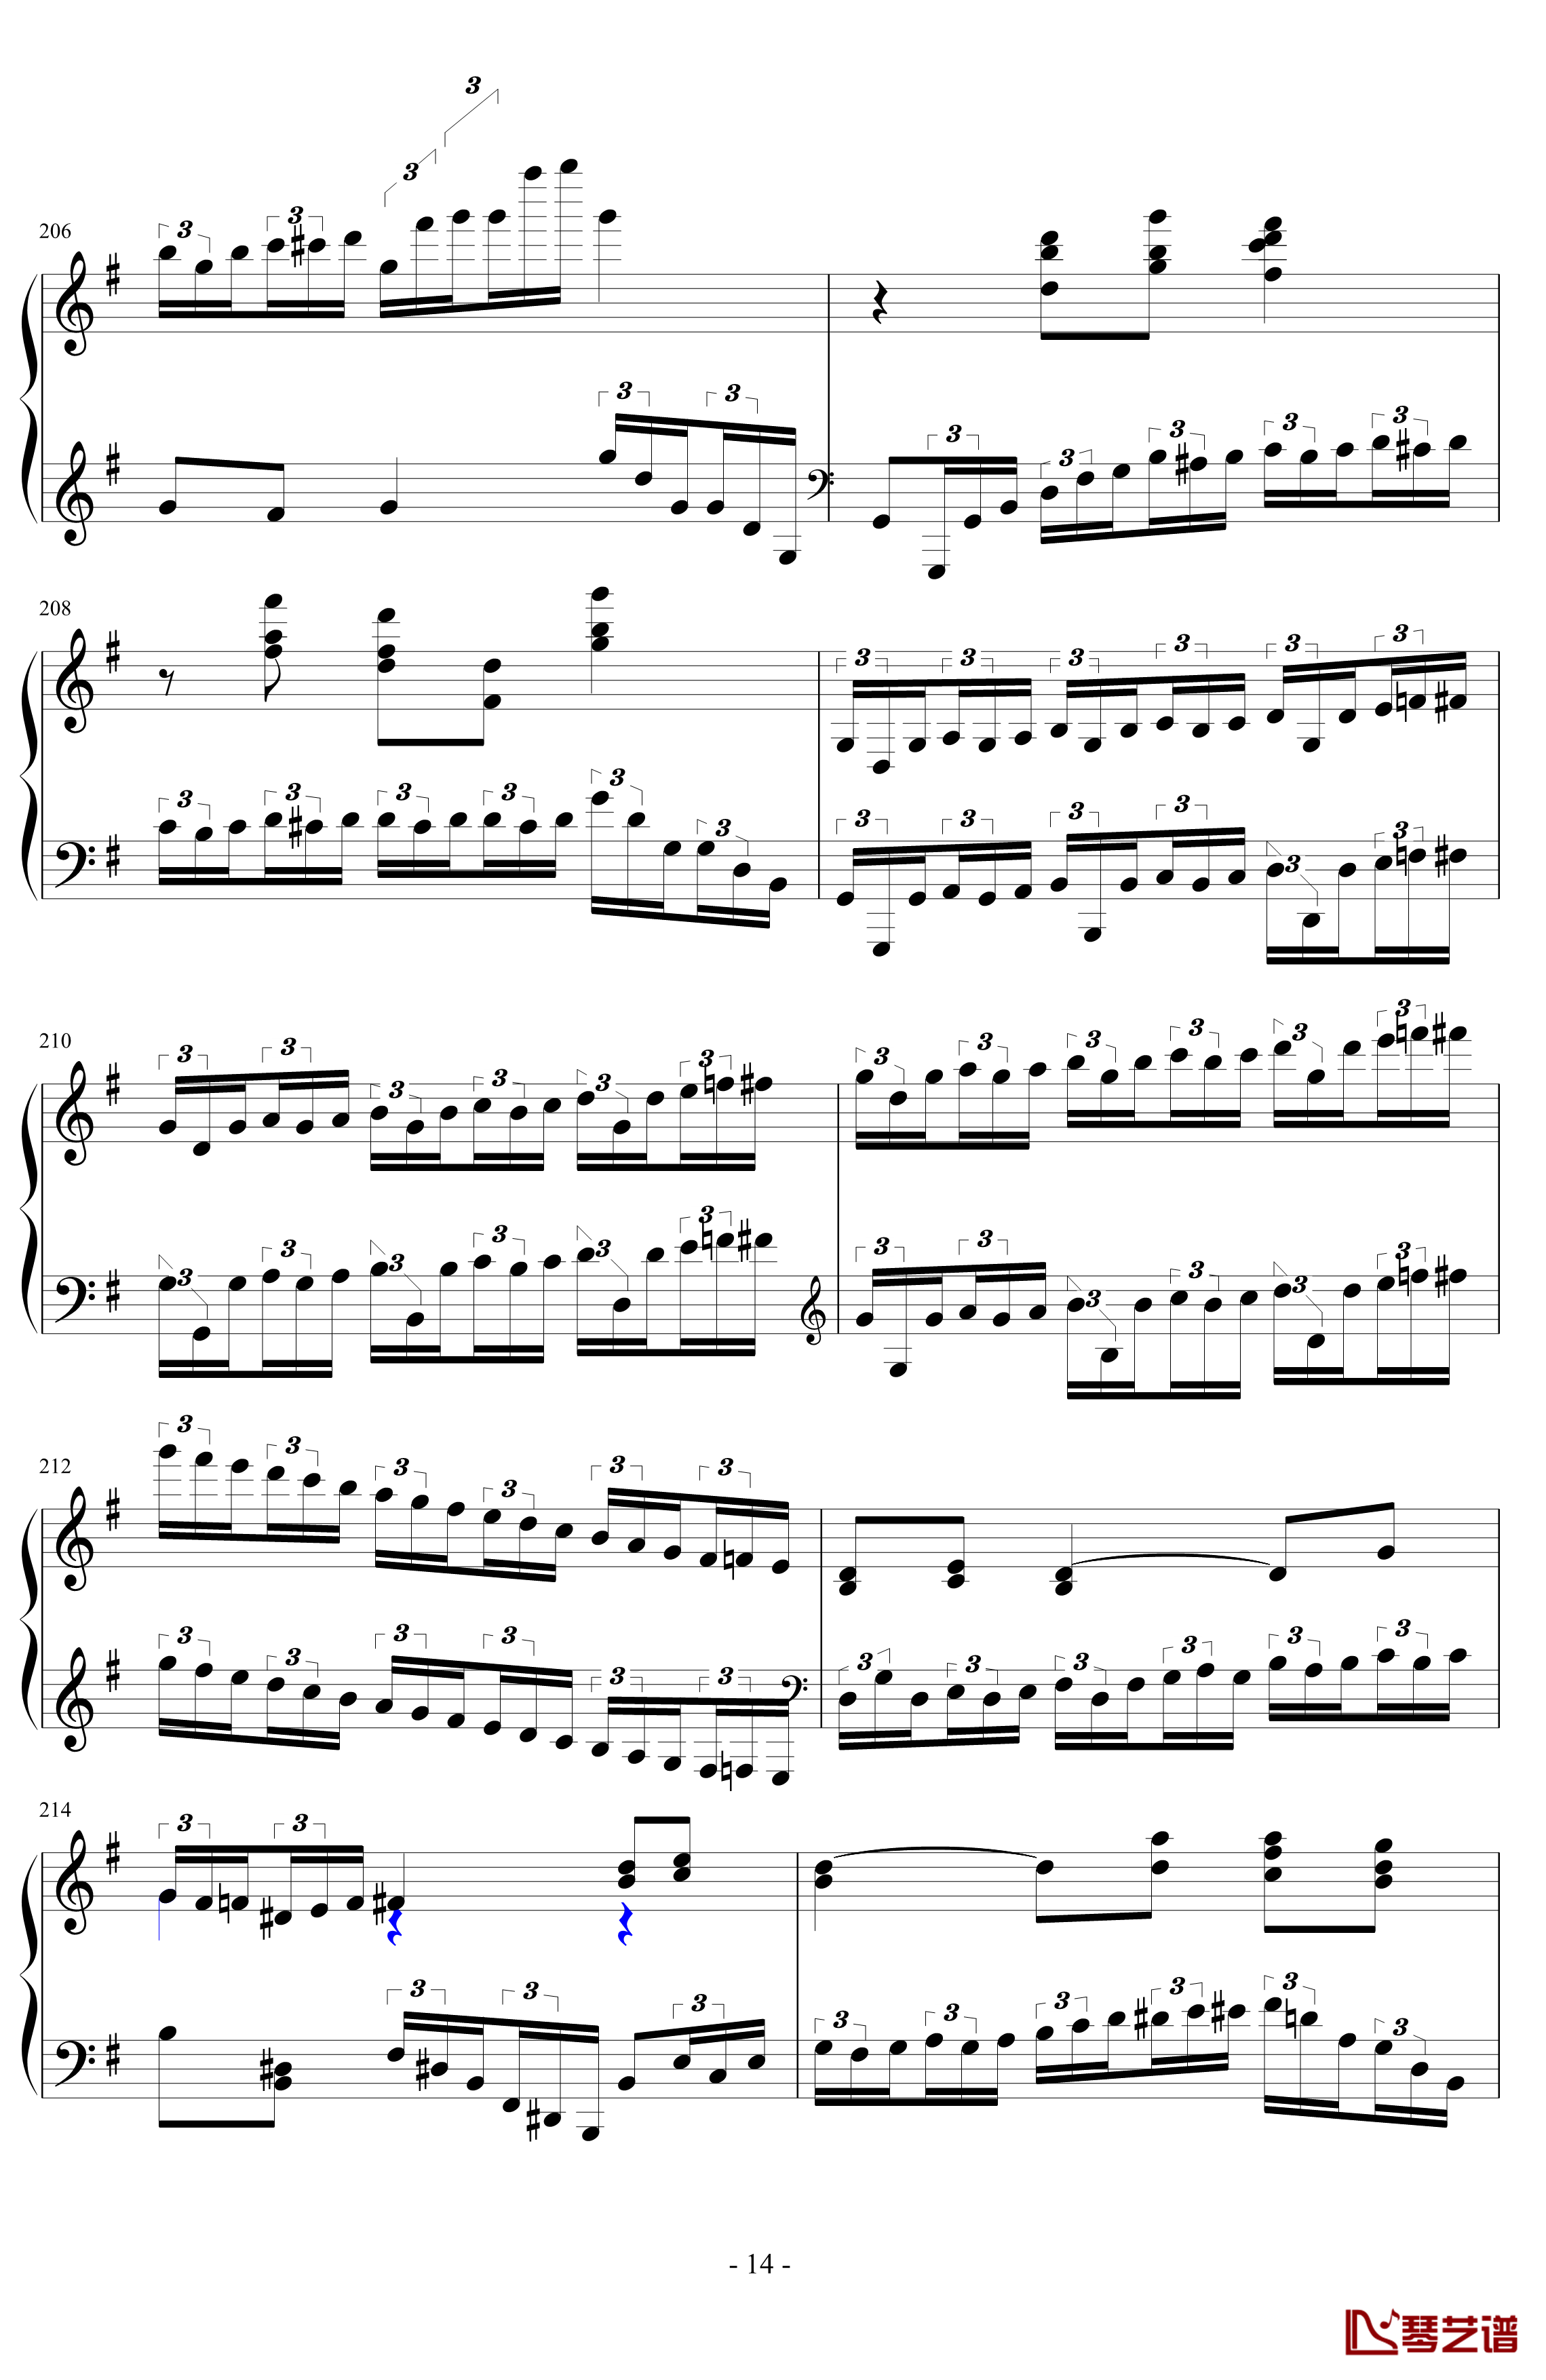 生日歌变奏曲钢琴谱-PARROT18614